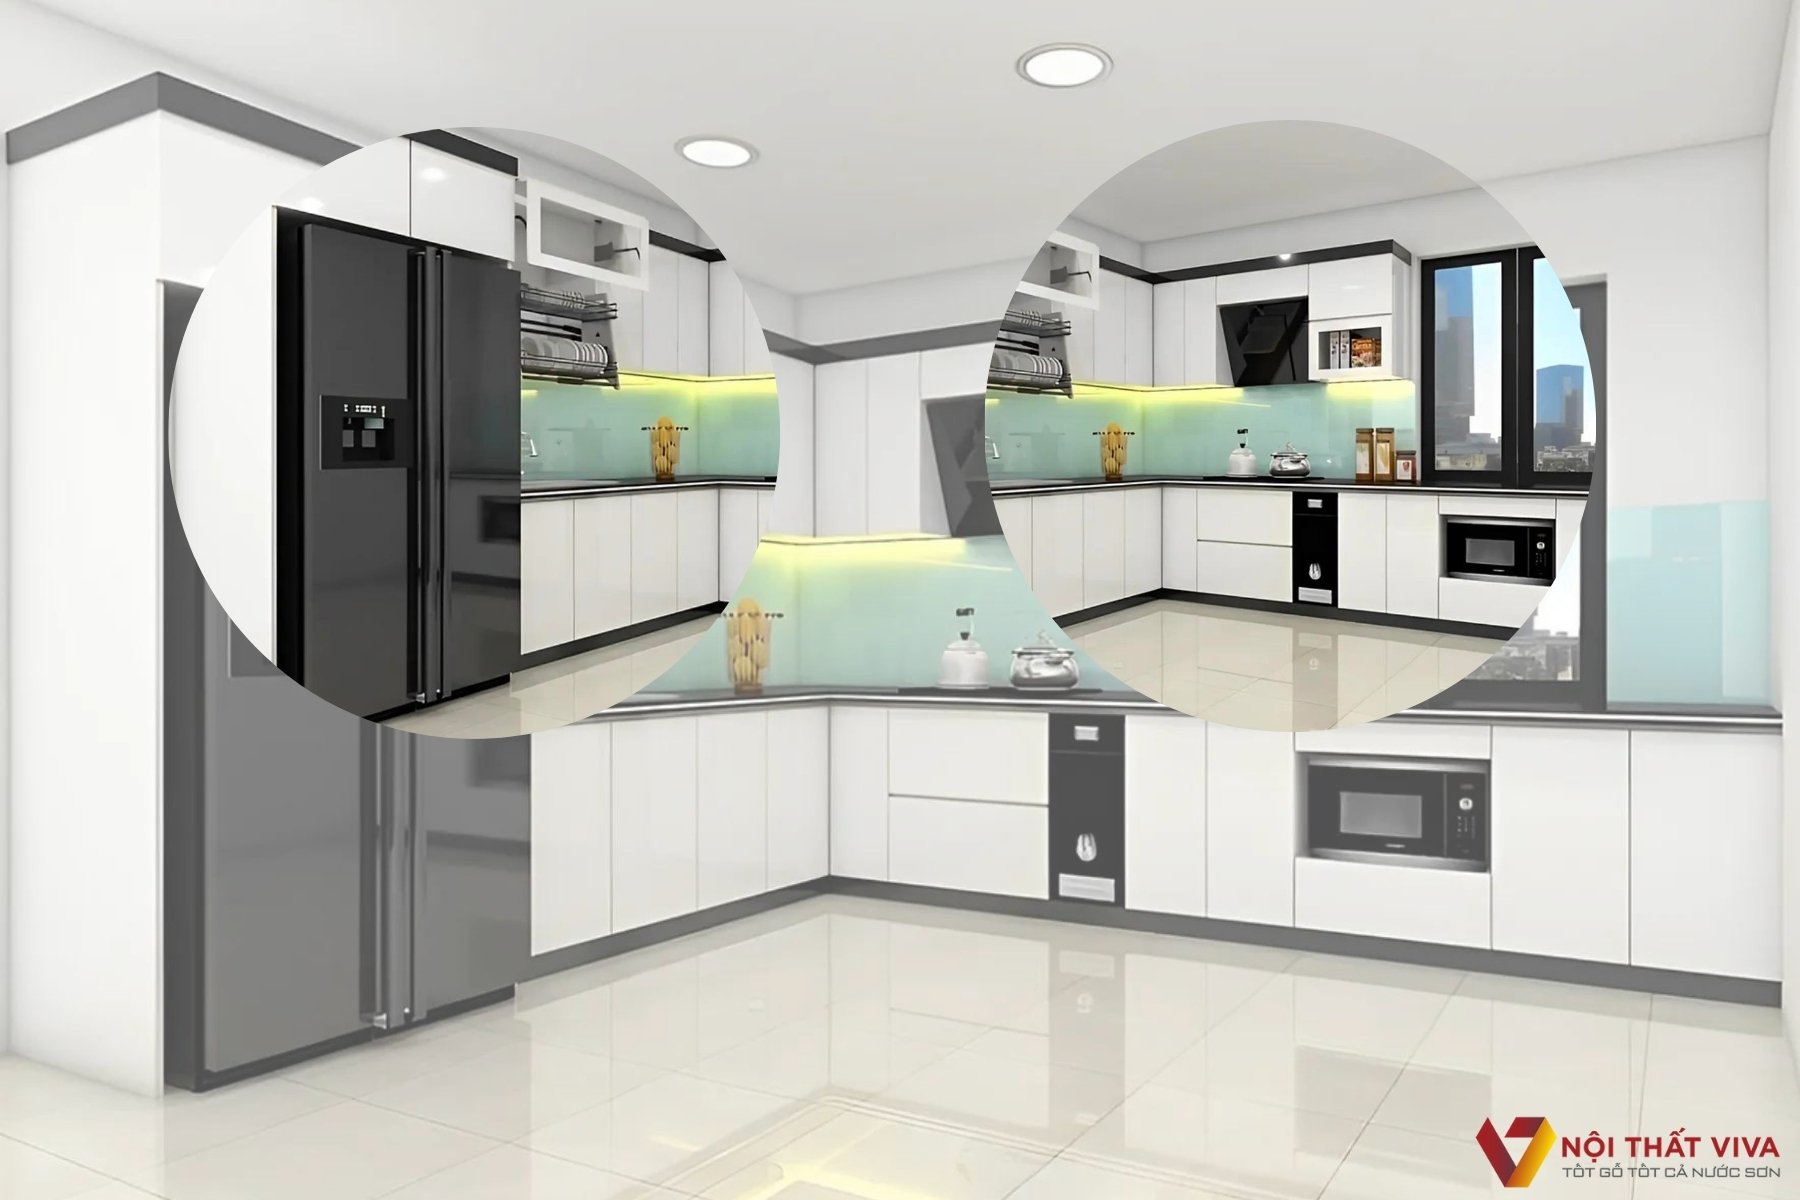 Tủ bếp hình chữ L MDF Acrylic - Thiết kế thông minh tối ưu không gian